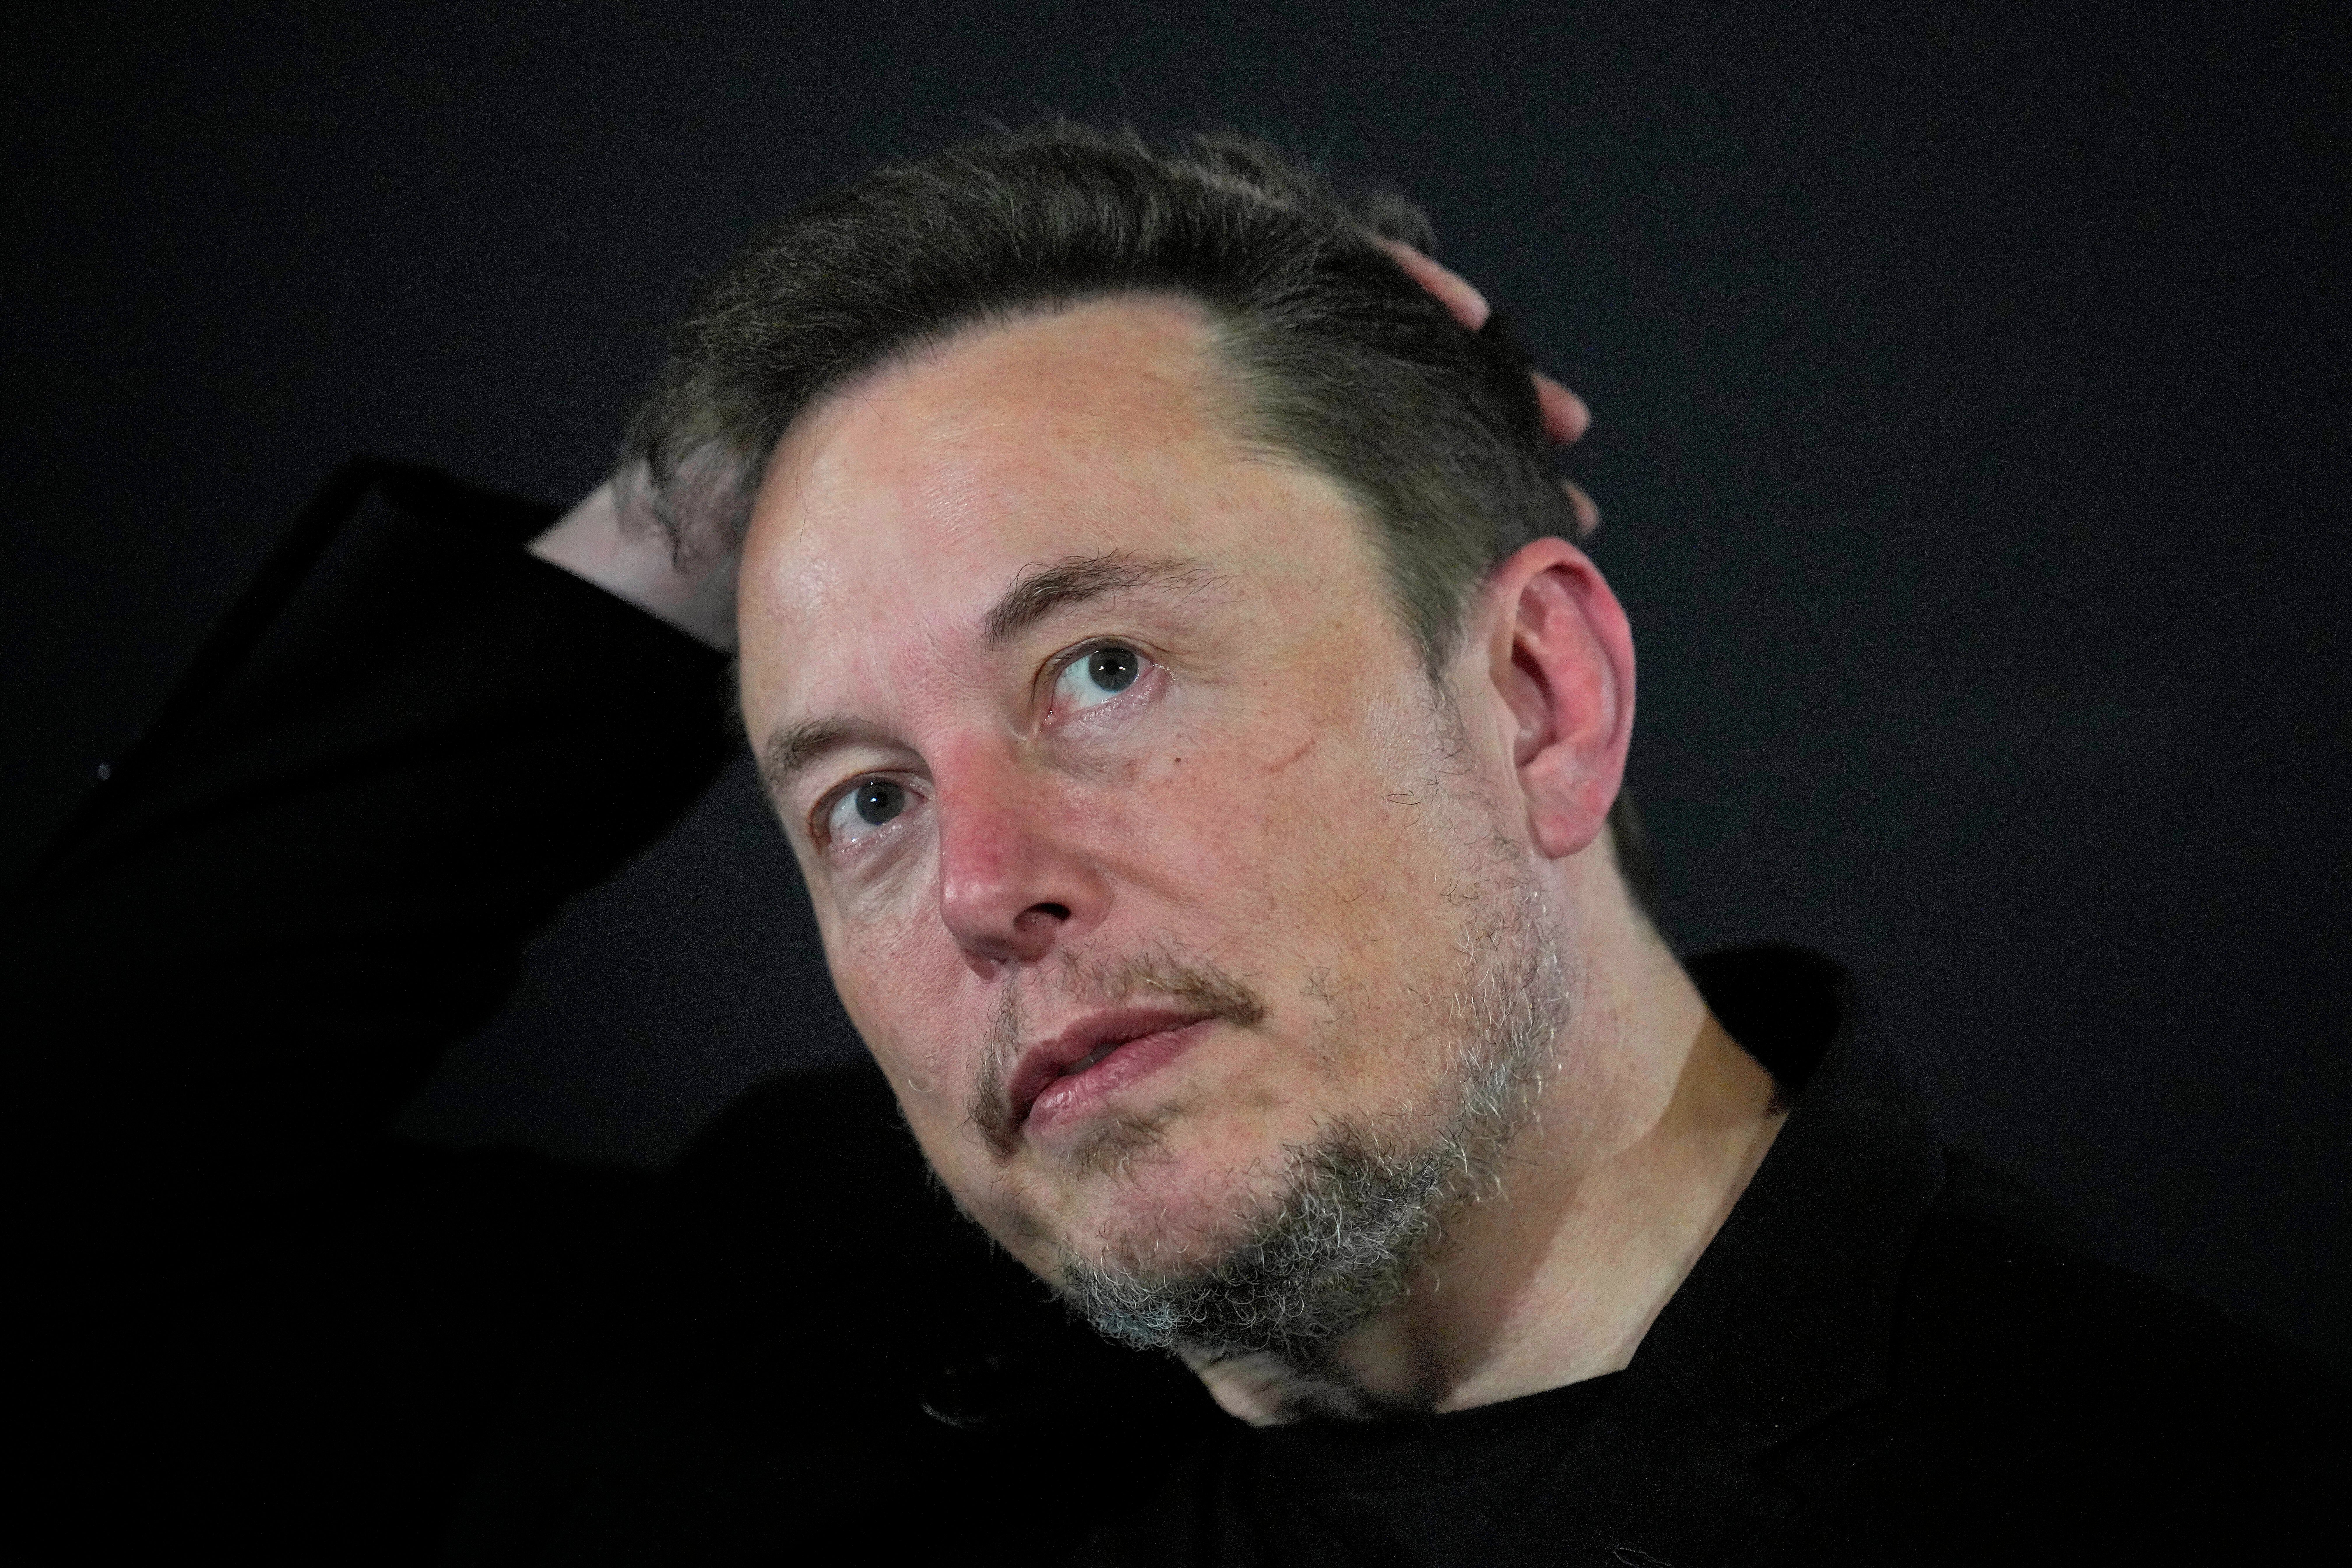 Elon Musk’s deposition has been released